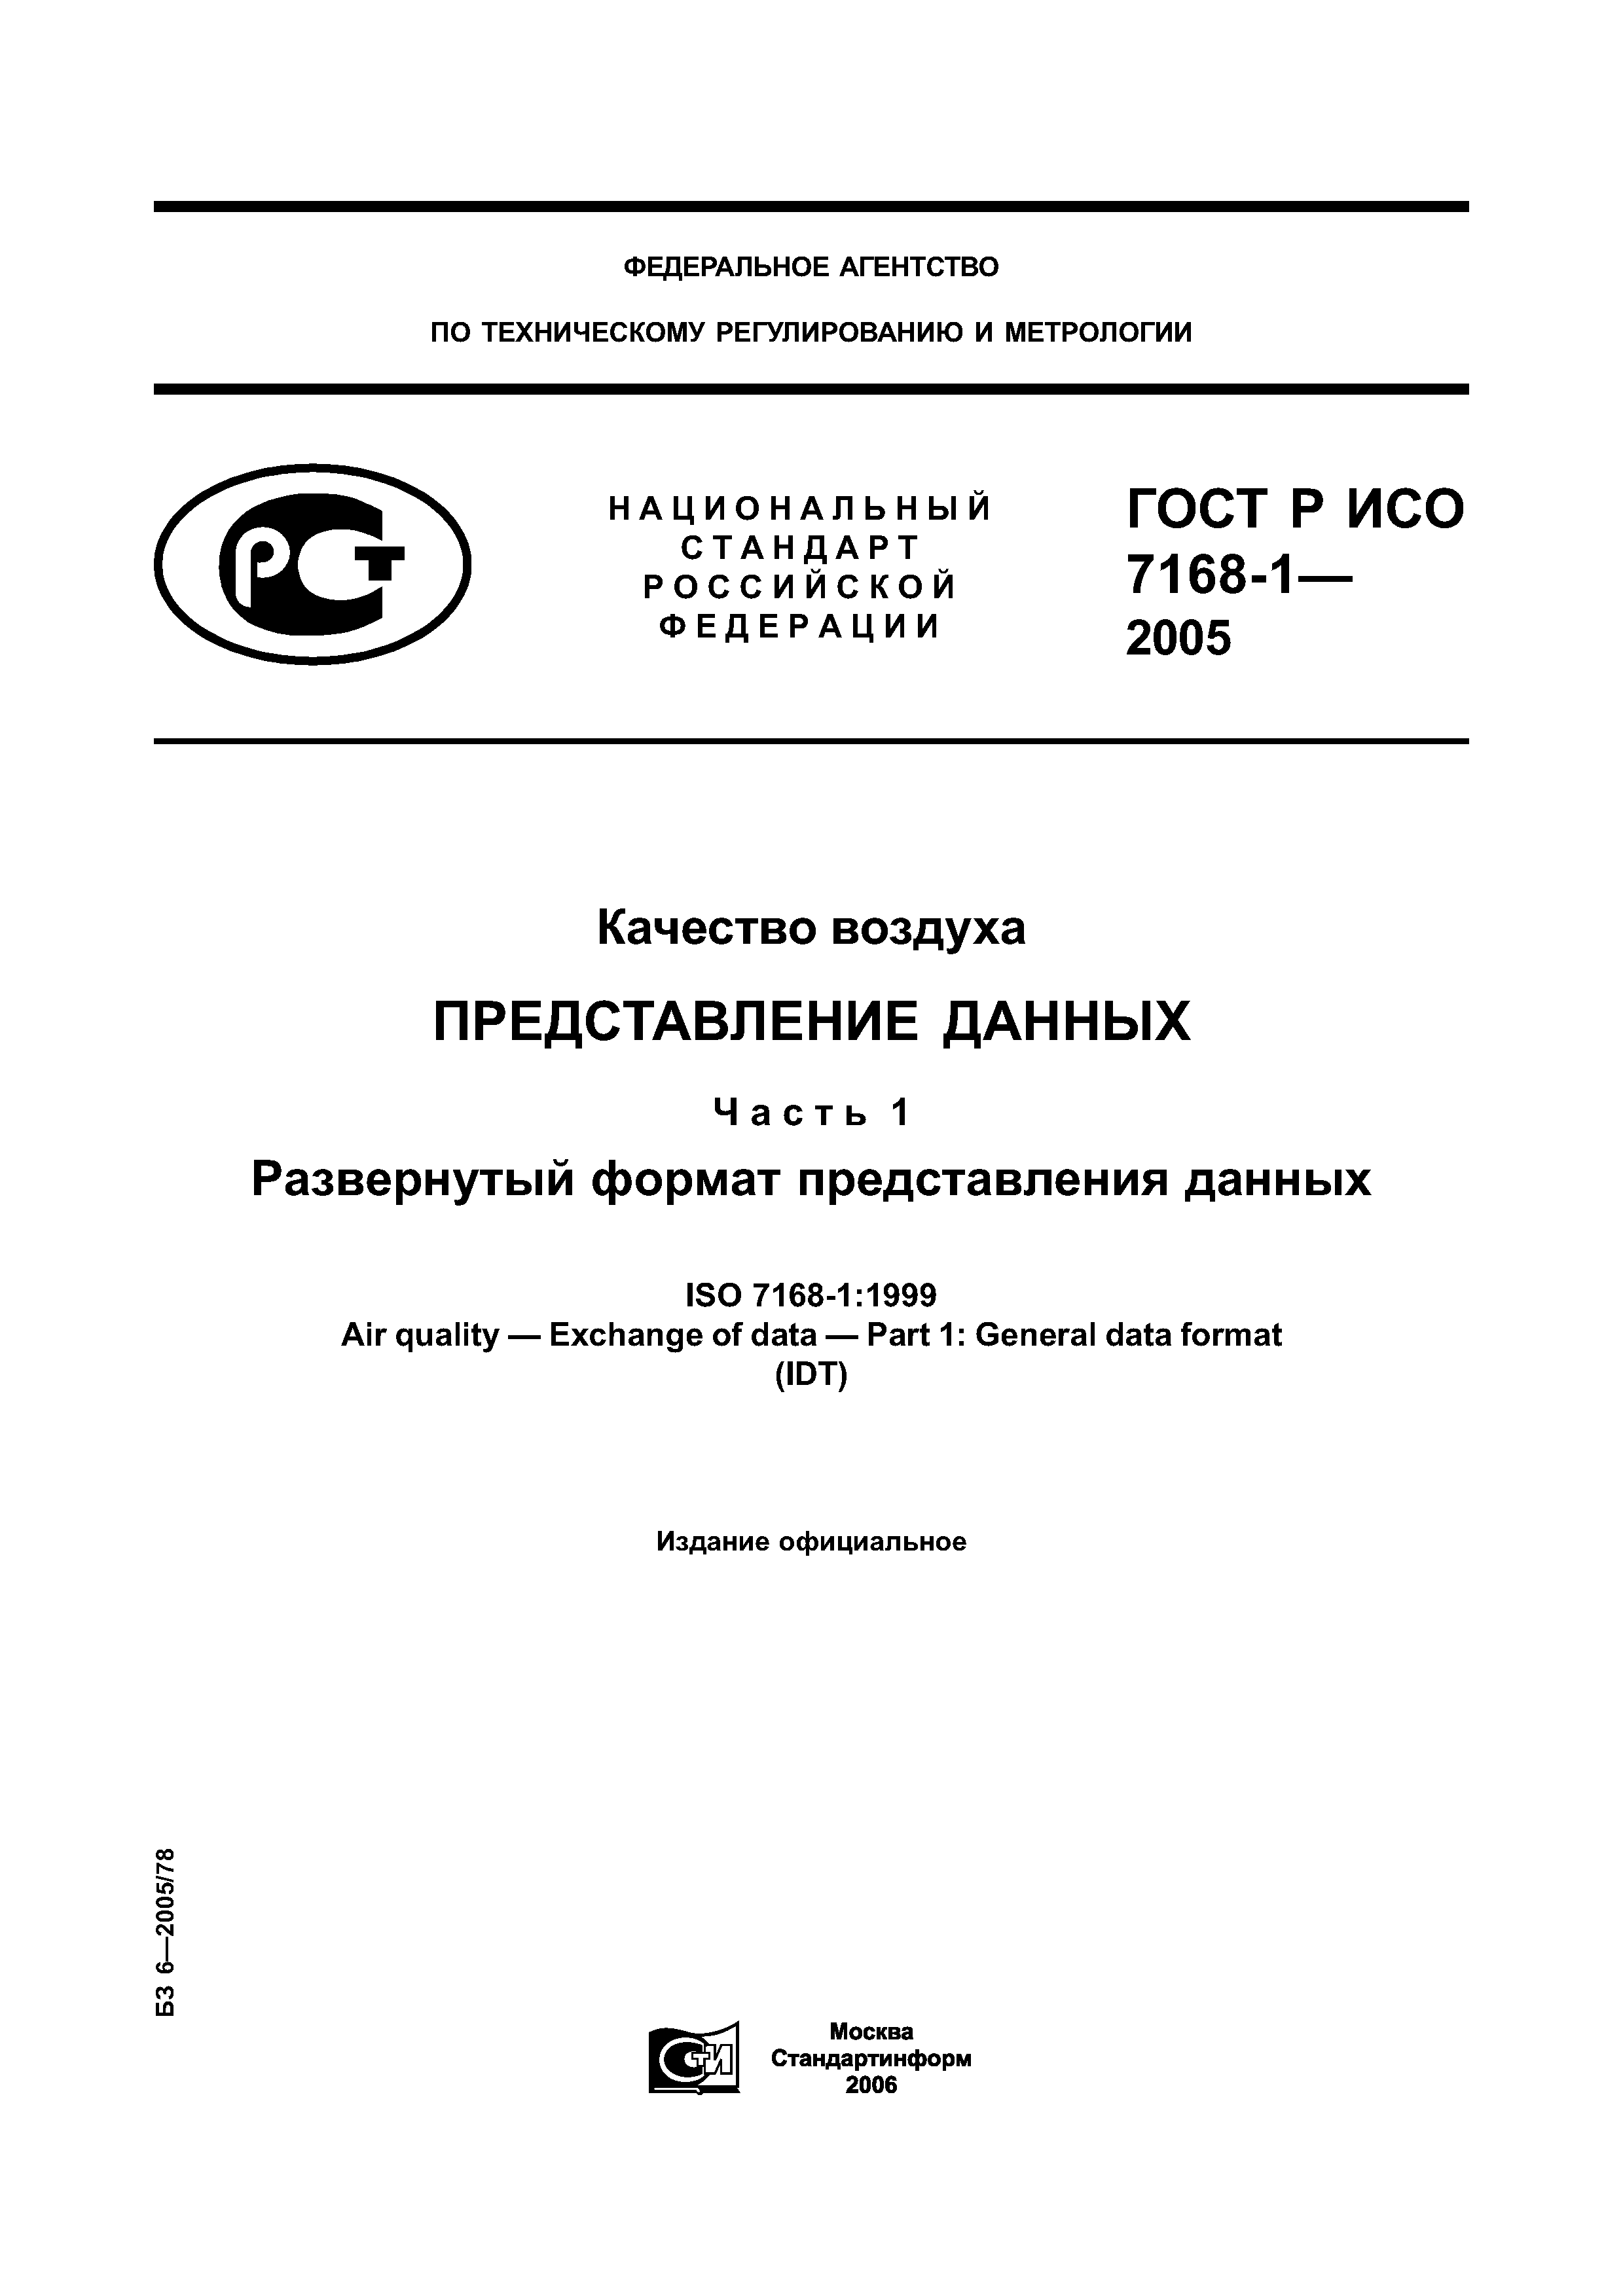 ГОСТ Р ИСО 7168-1-2005